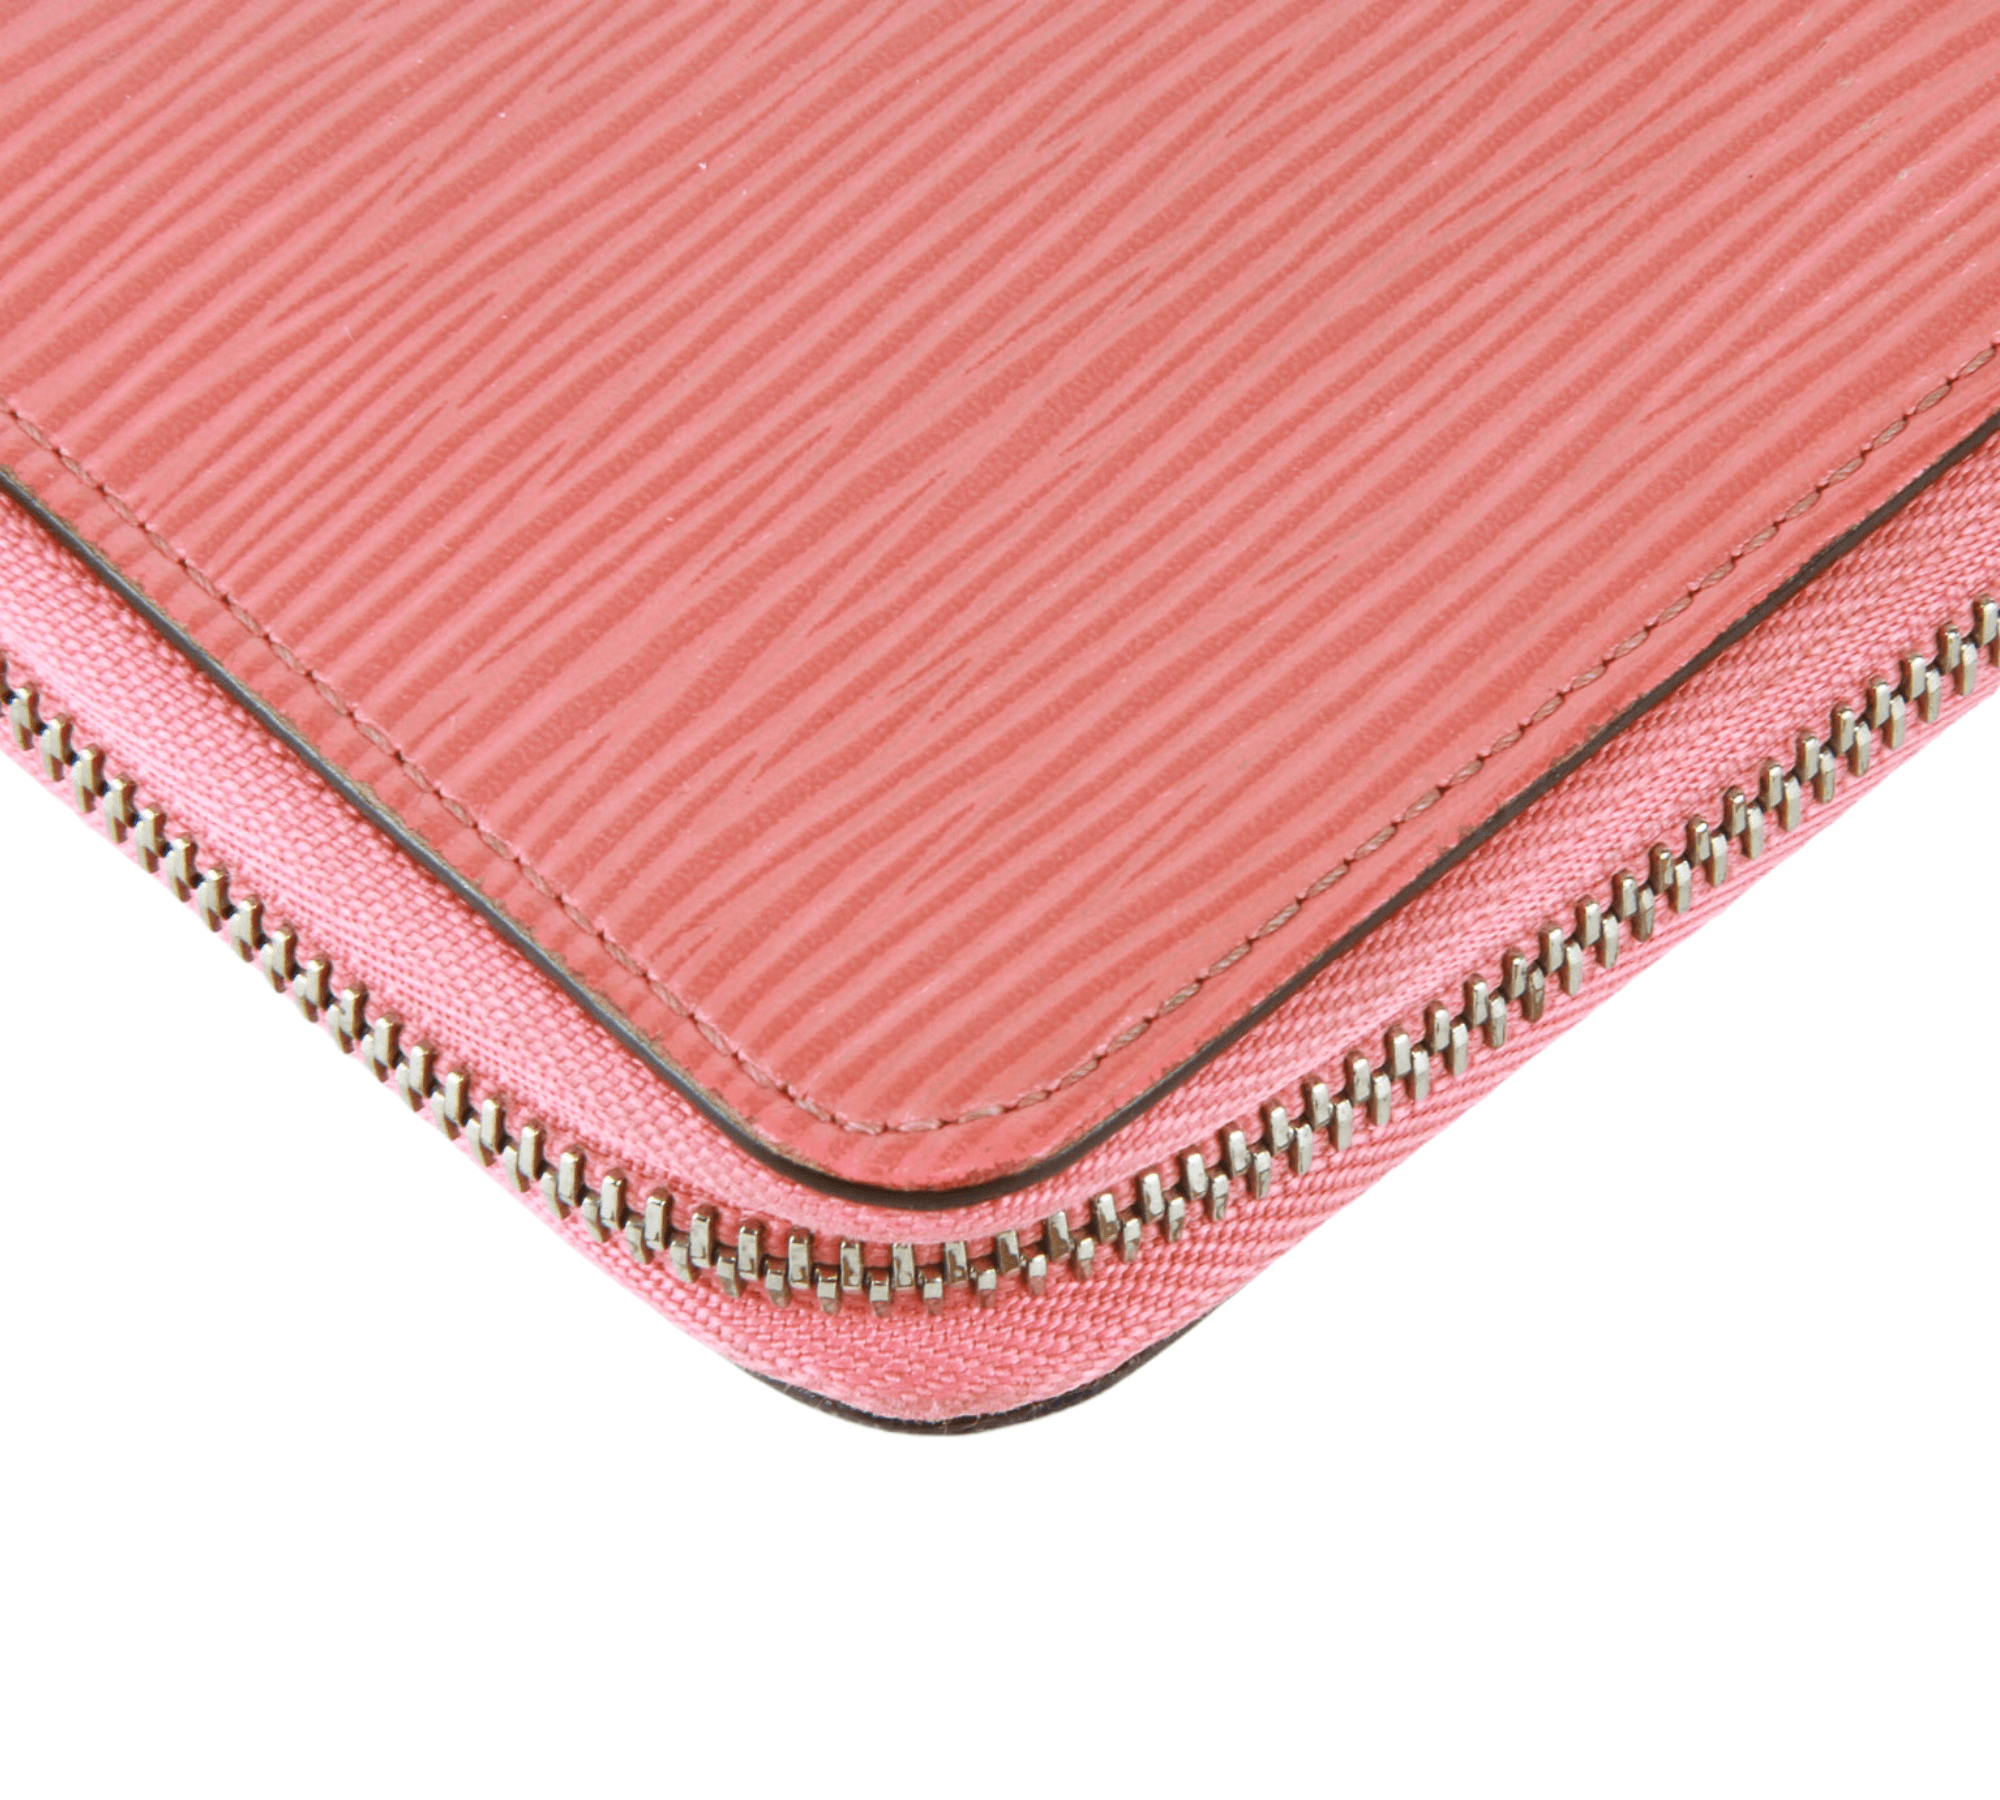 Authentic Louis Vuitton Hot Pink Wallet 